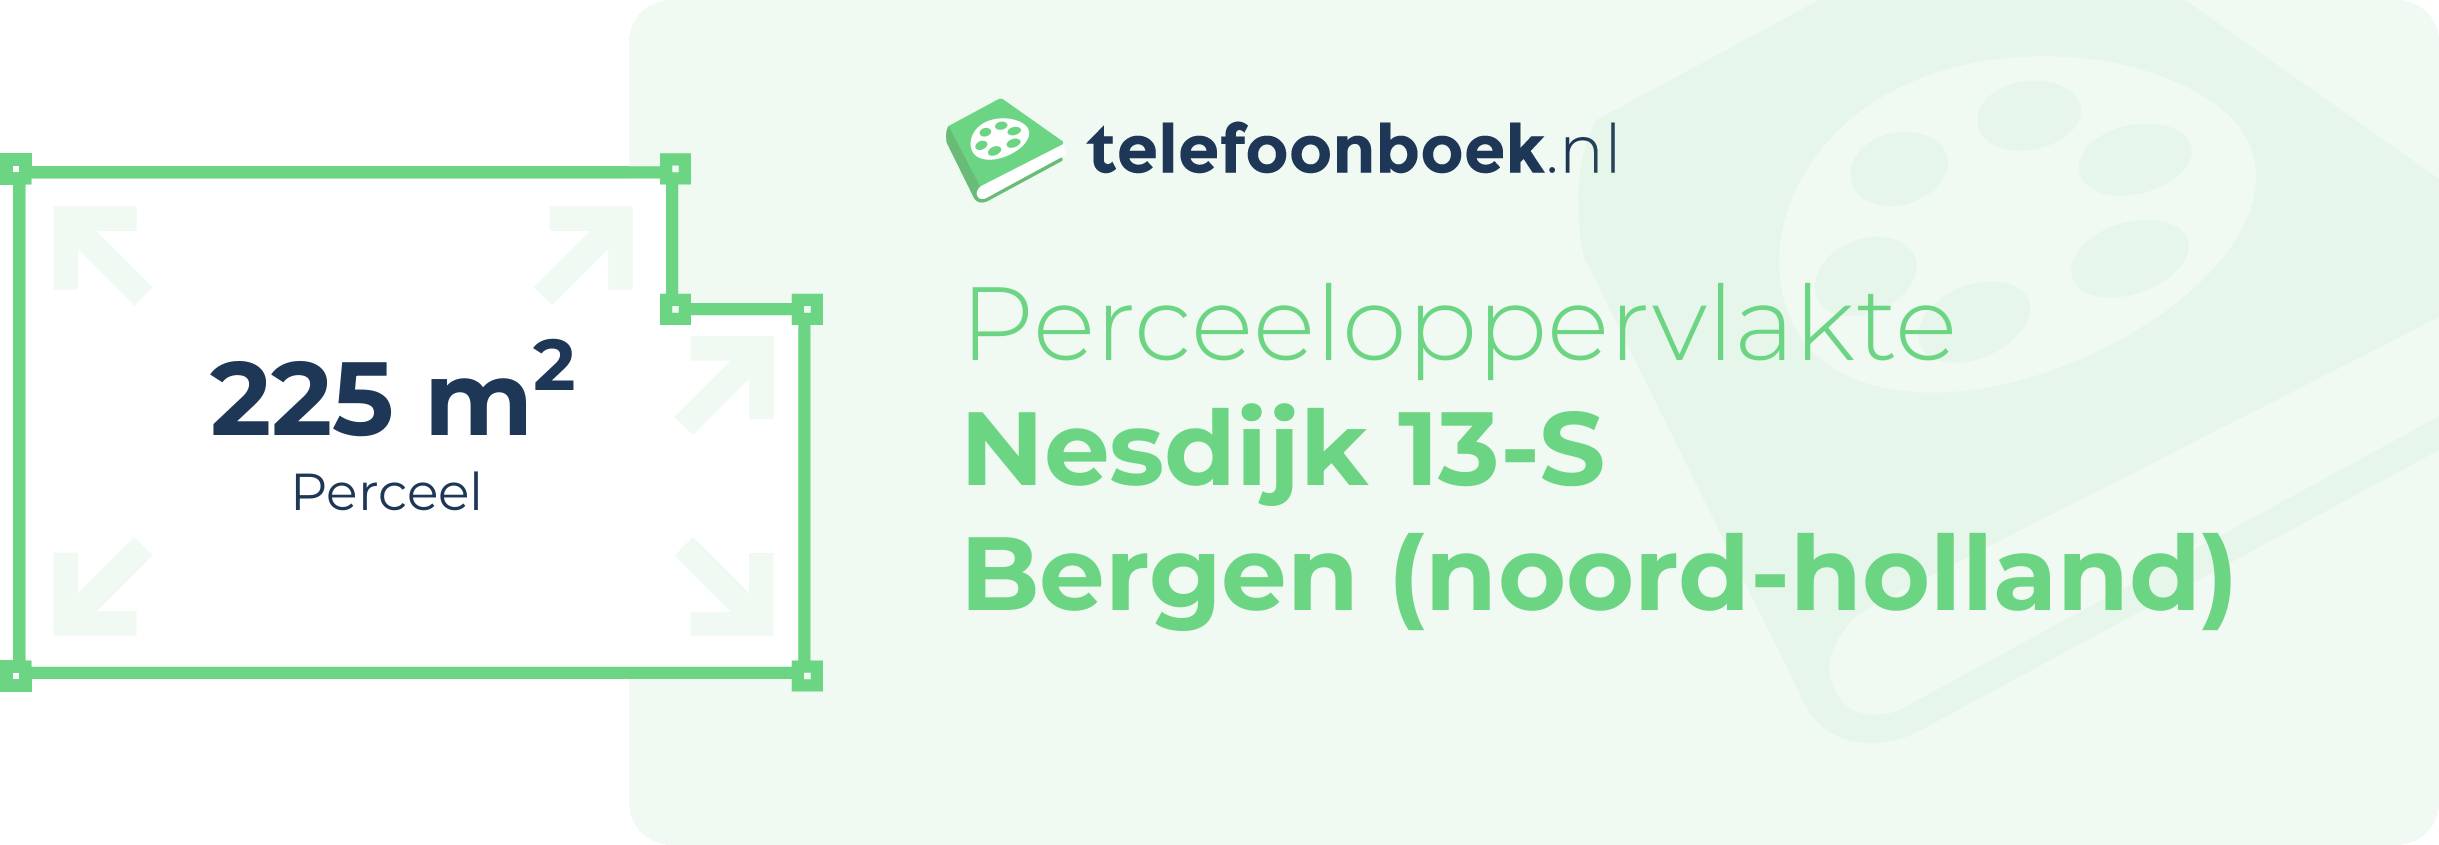 Perceeloppervlakte Nesdijk 13-S Bergen (Noord-Holland)